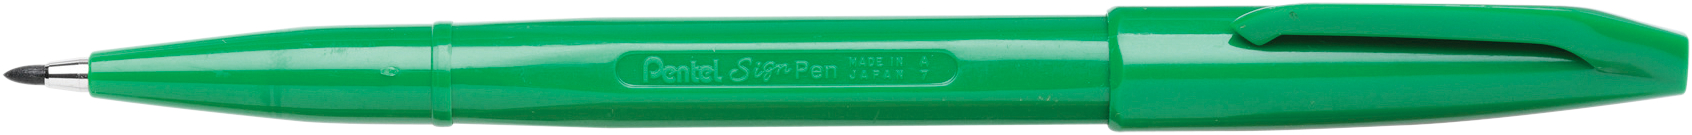 PENTEL Stylos fibre Sign Pen 2.0mm S520D vert vert